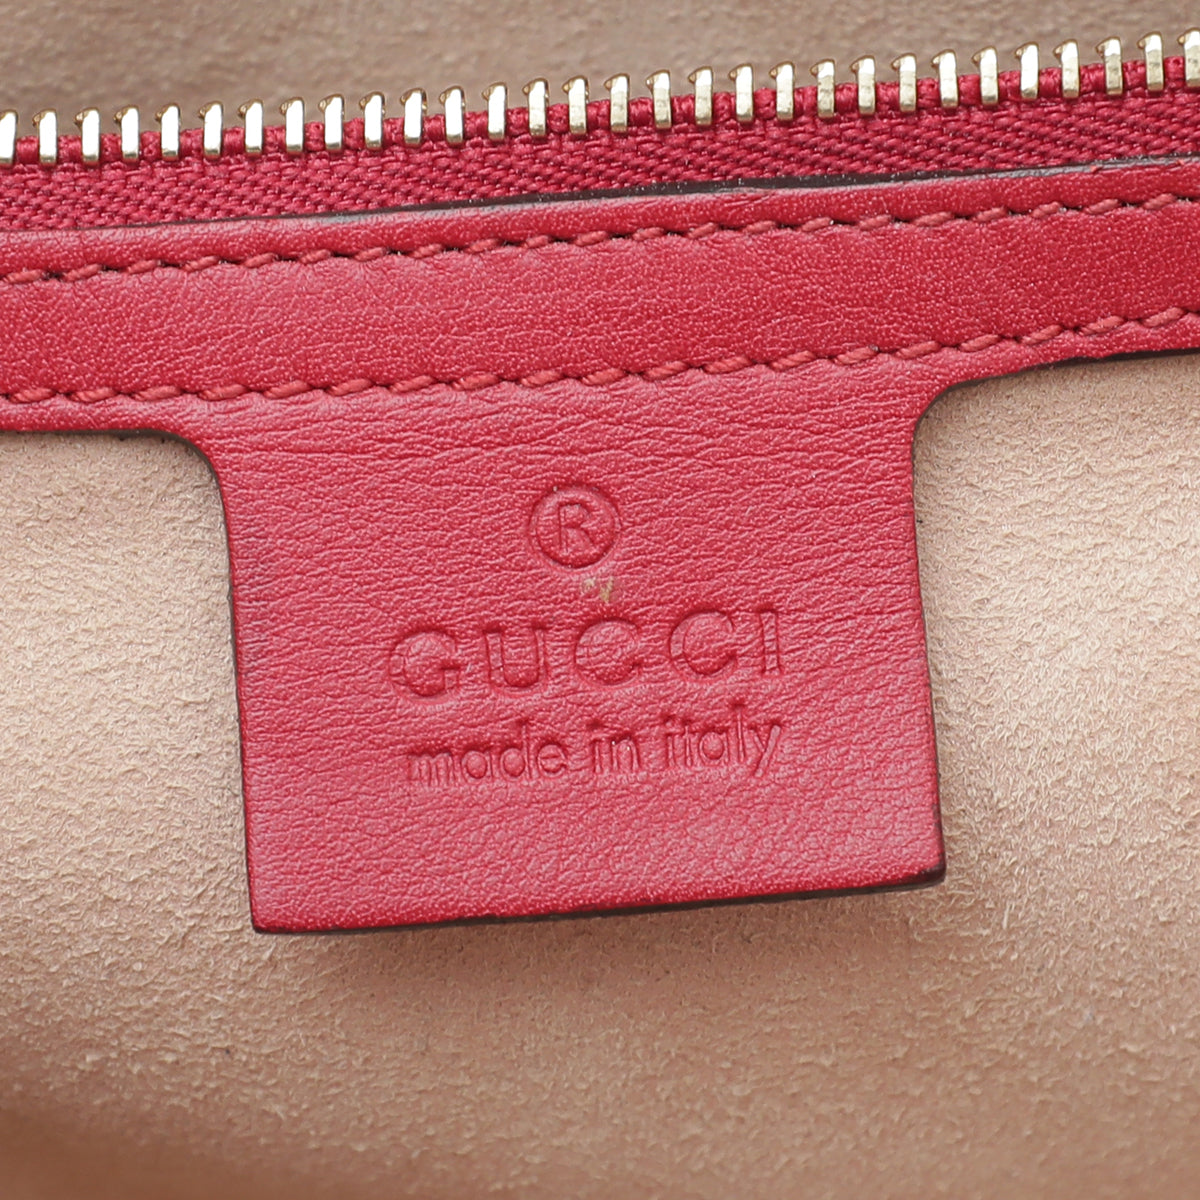 Gucci Bicolor GG Supreme Padlock Medium Bag